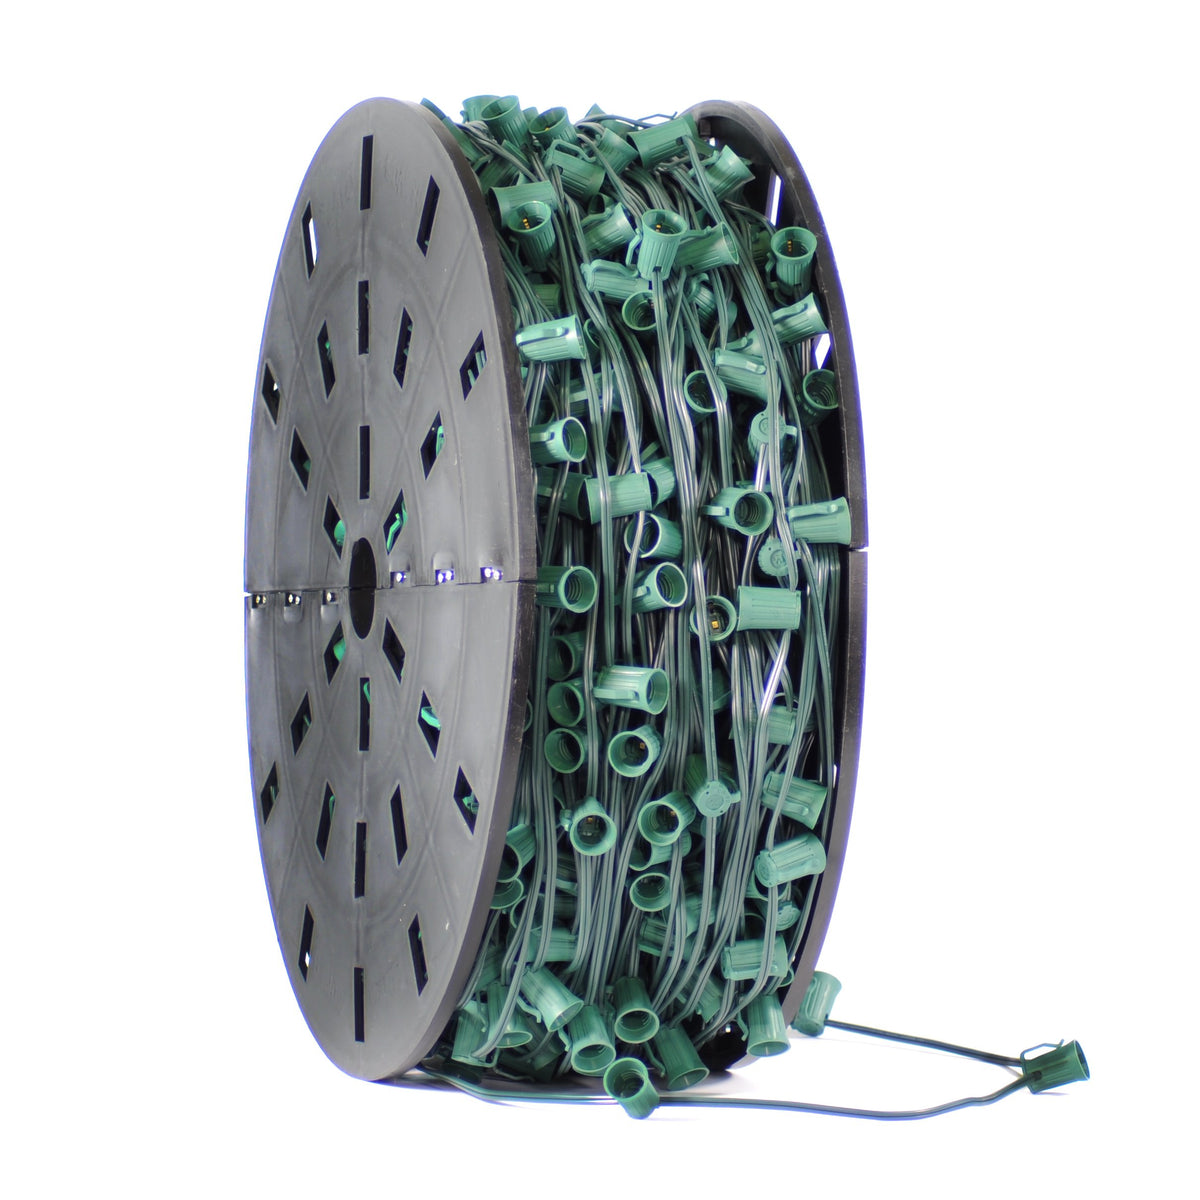 C9 Light Stringer Bulk Spool · 15-Inch Spacing E17 Sockets · SPT-2 Wire · 1000 Feet - HLO Lighting